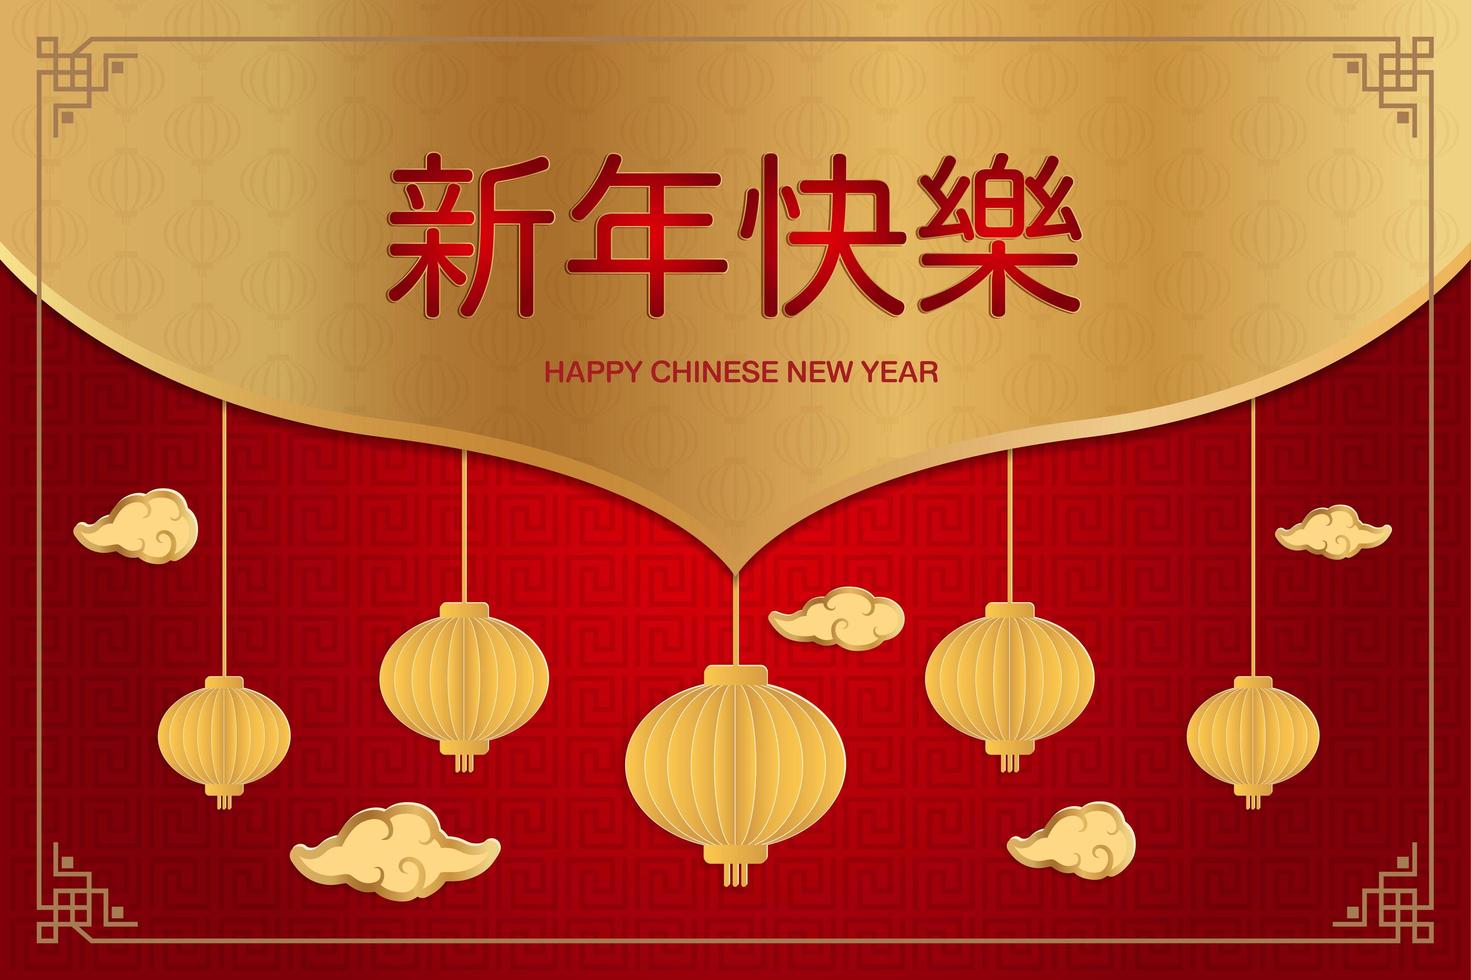 gratulationskort för kinesiskt nytt år vektor